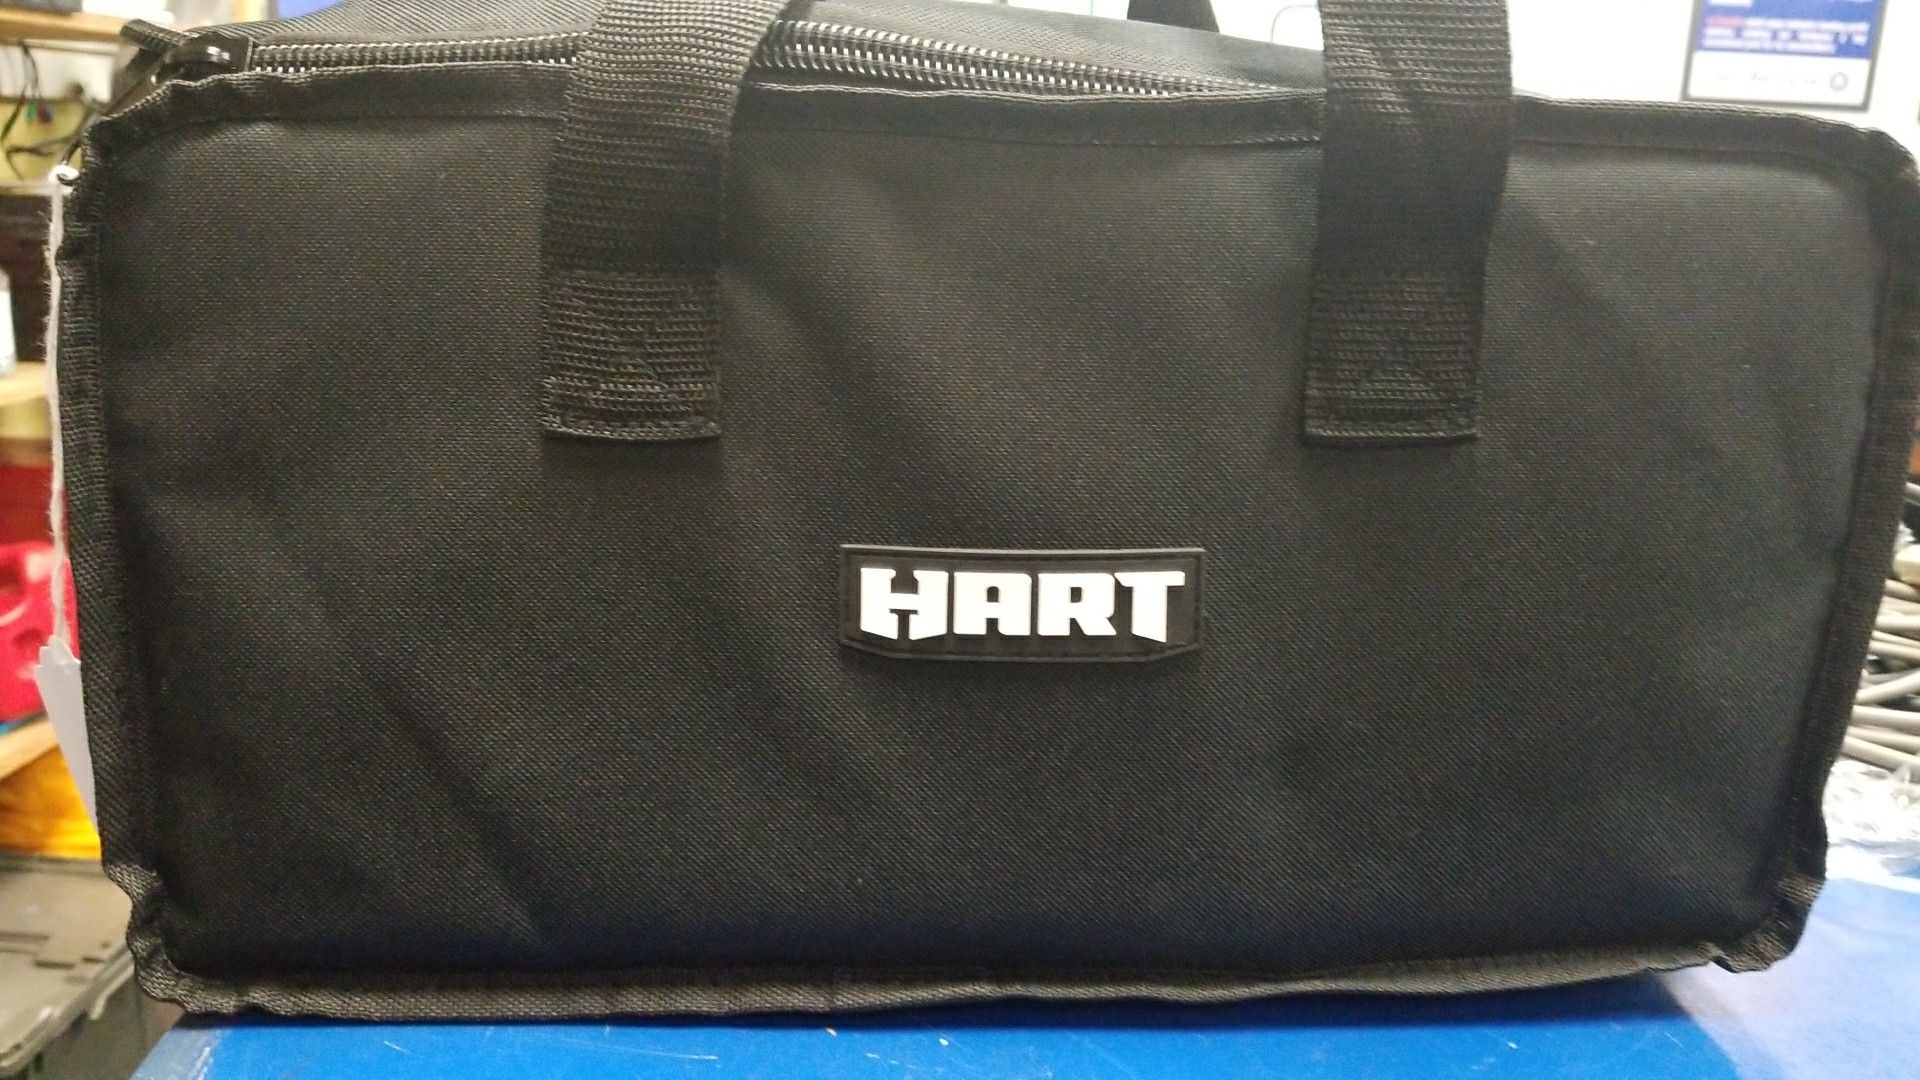 Hart 20v drill set